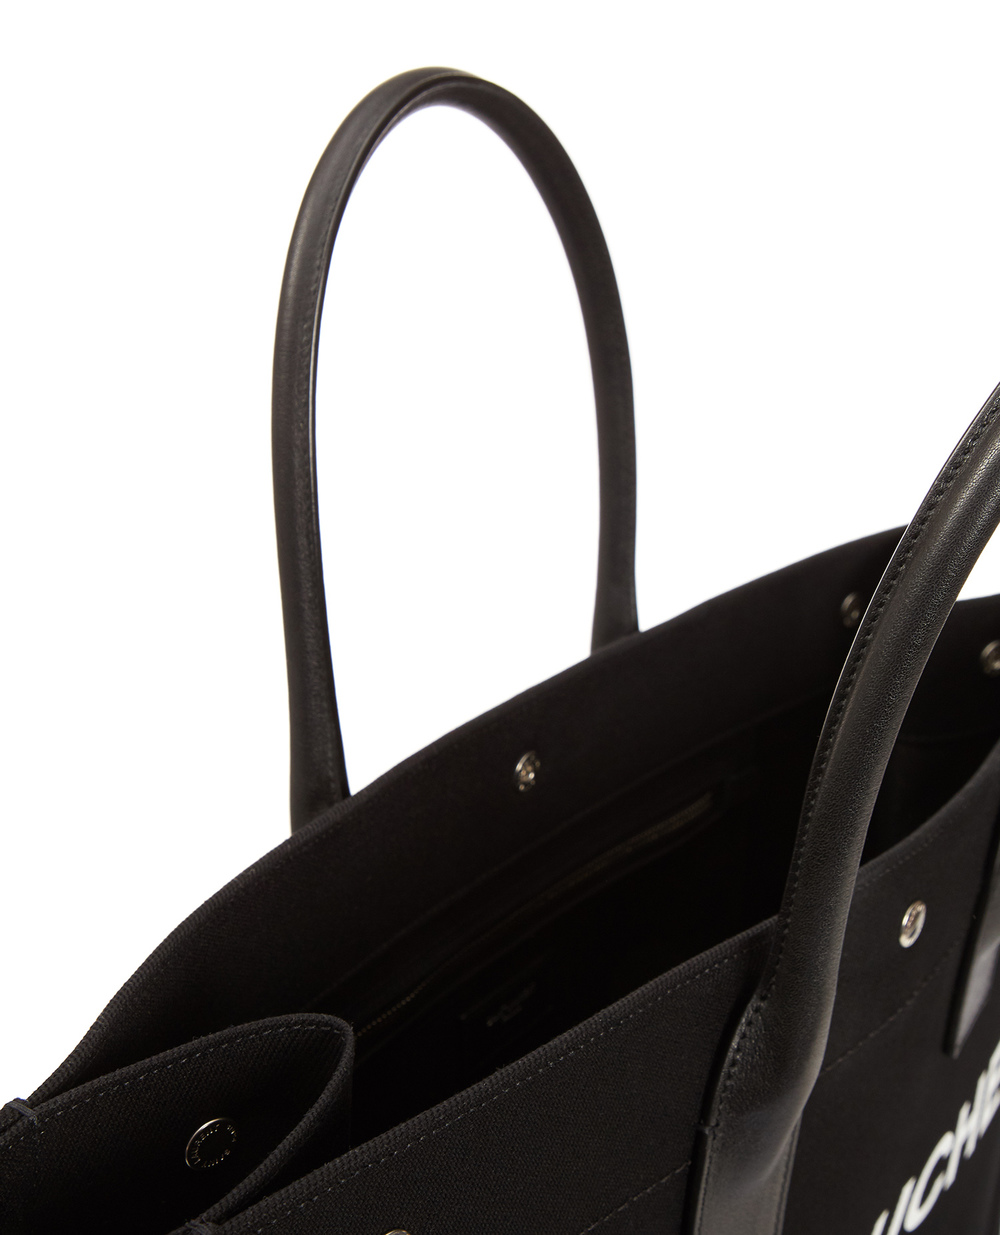 Сумка Rive Gauche Saint Laurent 499290-96N9E, чорний колір • Купити в інтернет-магазині Kameron